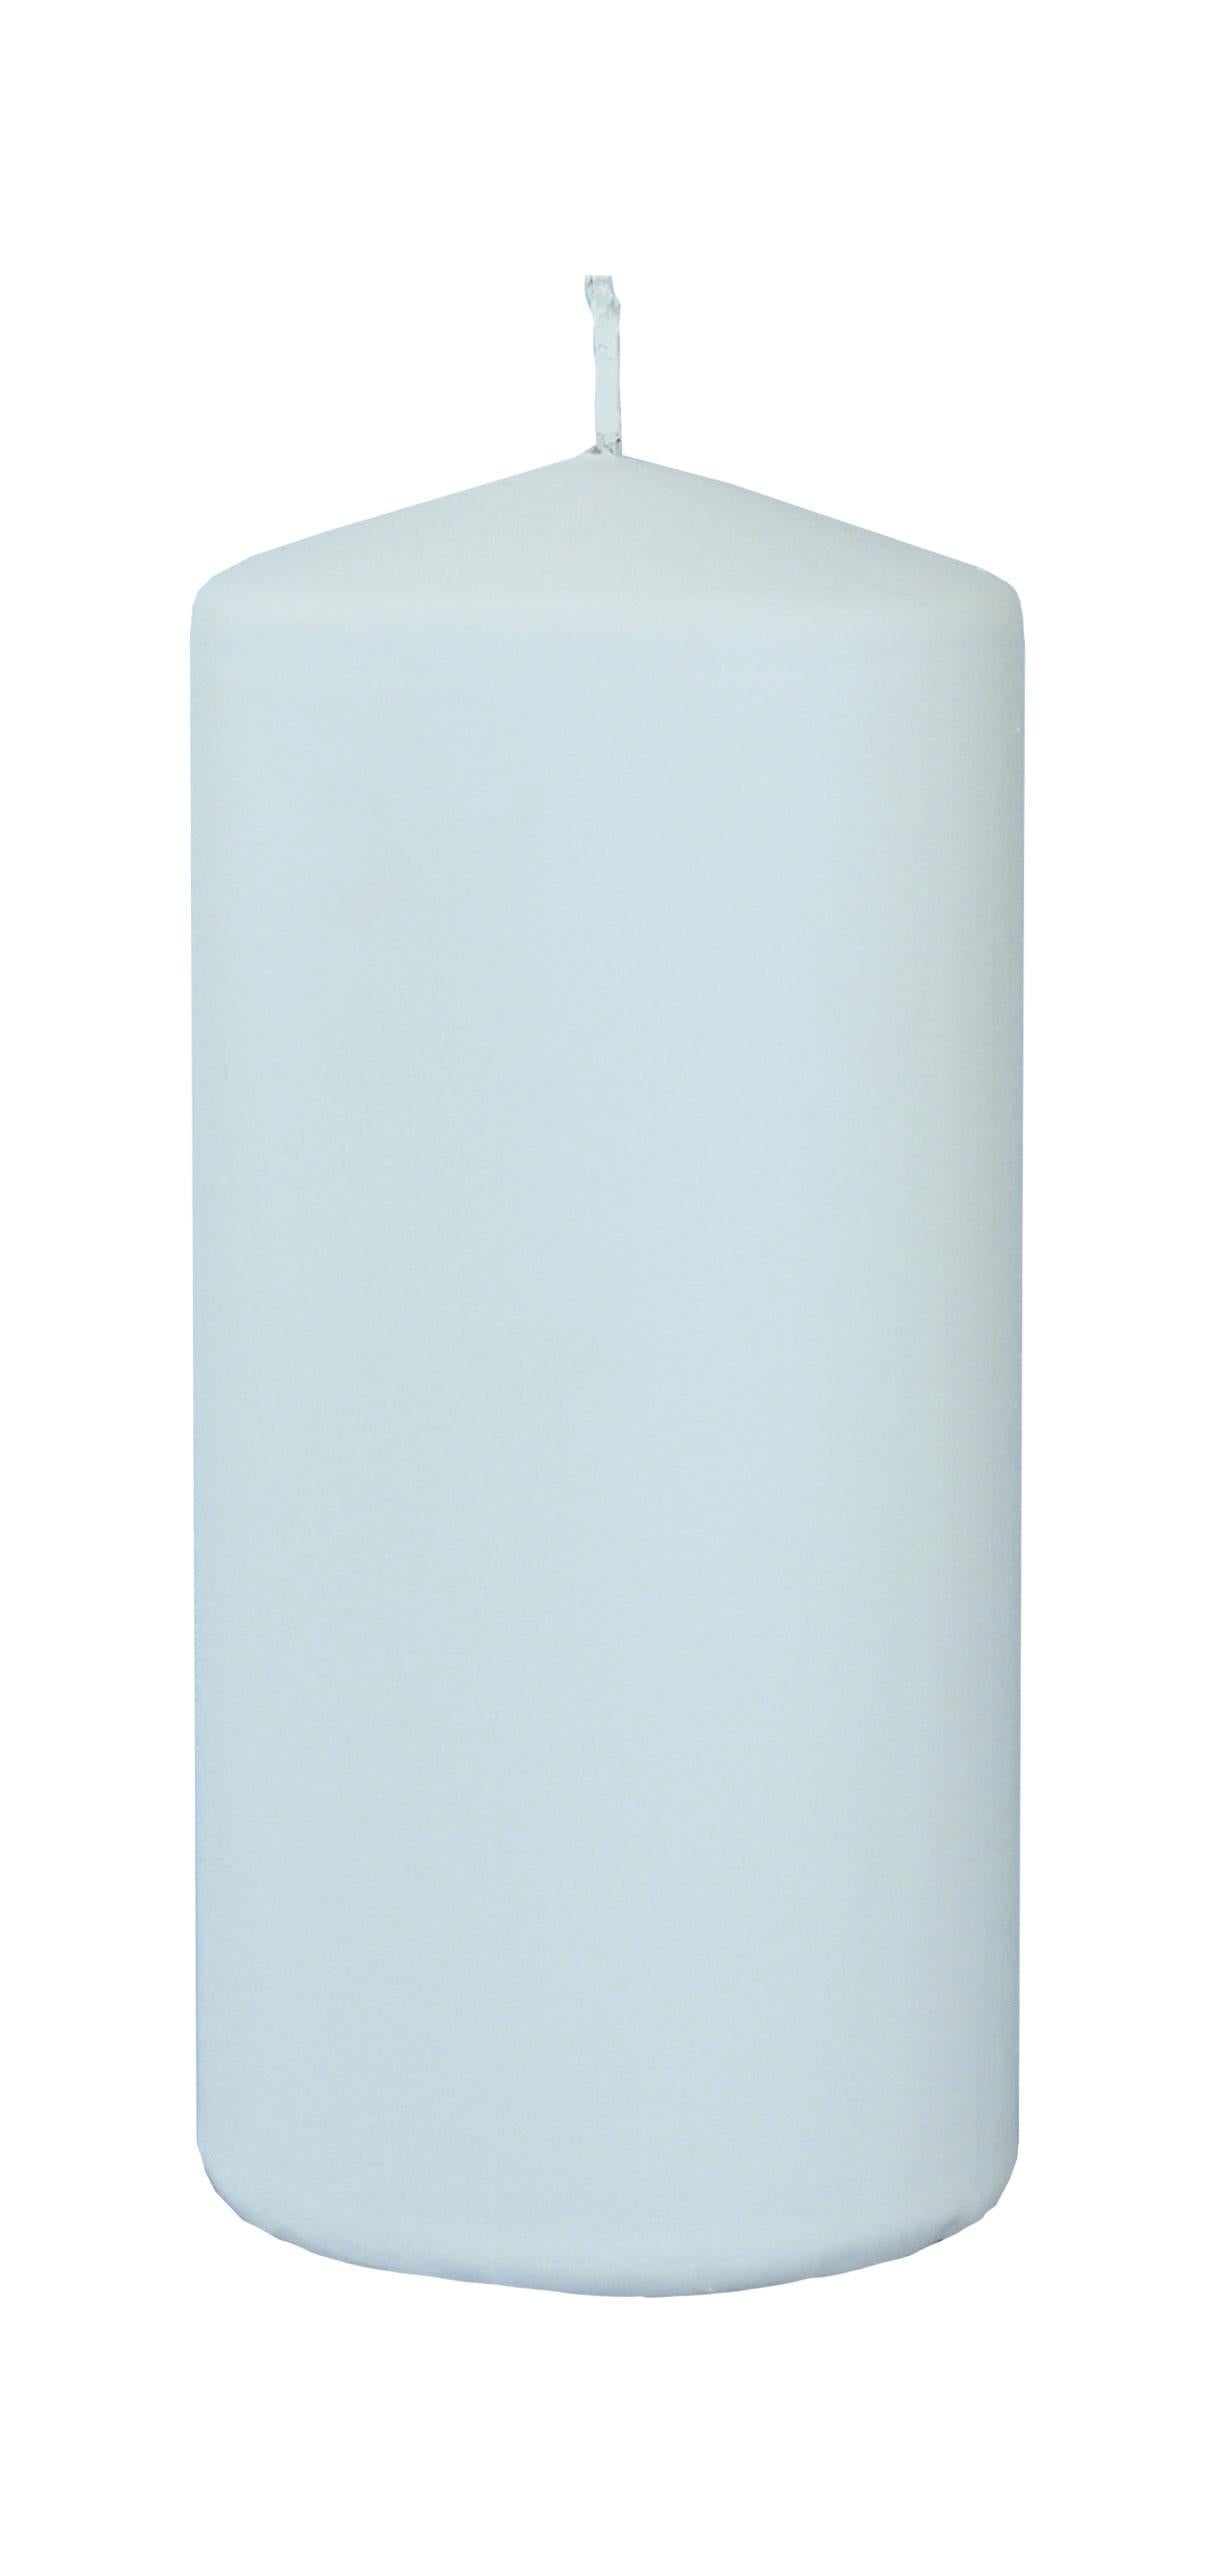 4x Flachkopfkerze Frosted Pastel 150/70mm (Himmelblau)